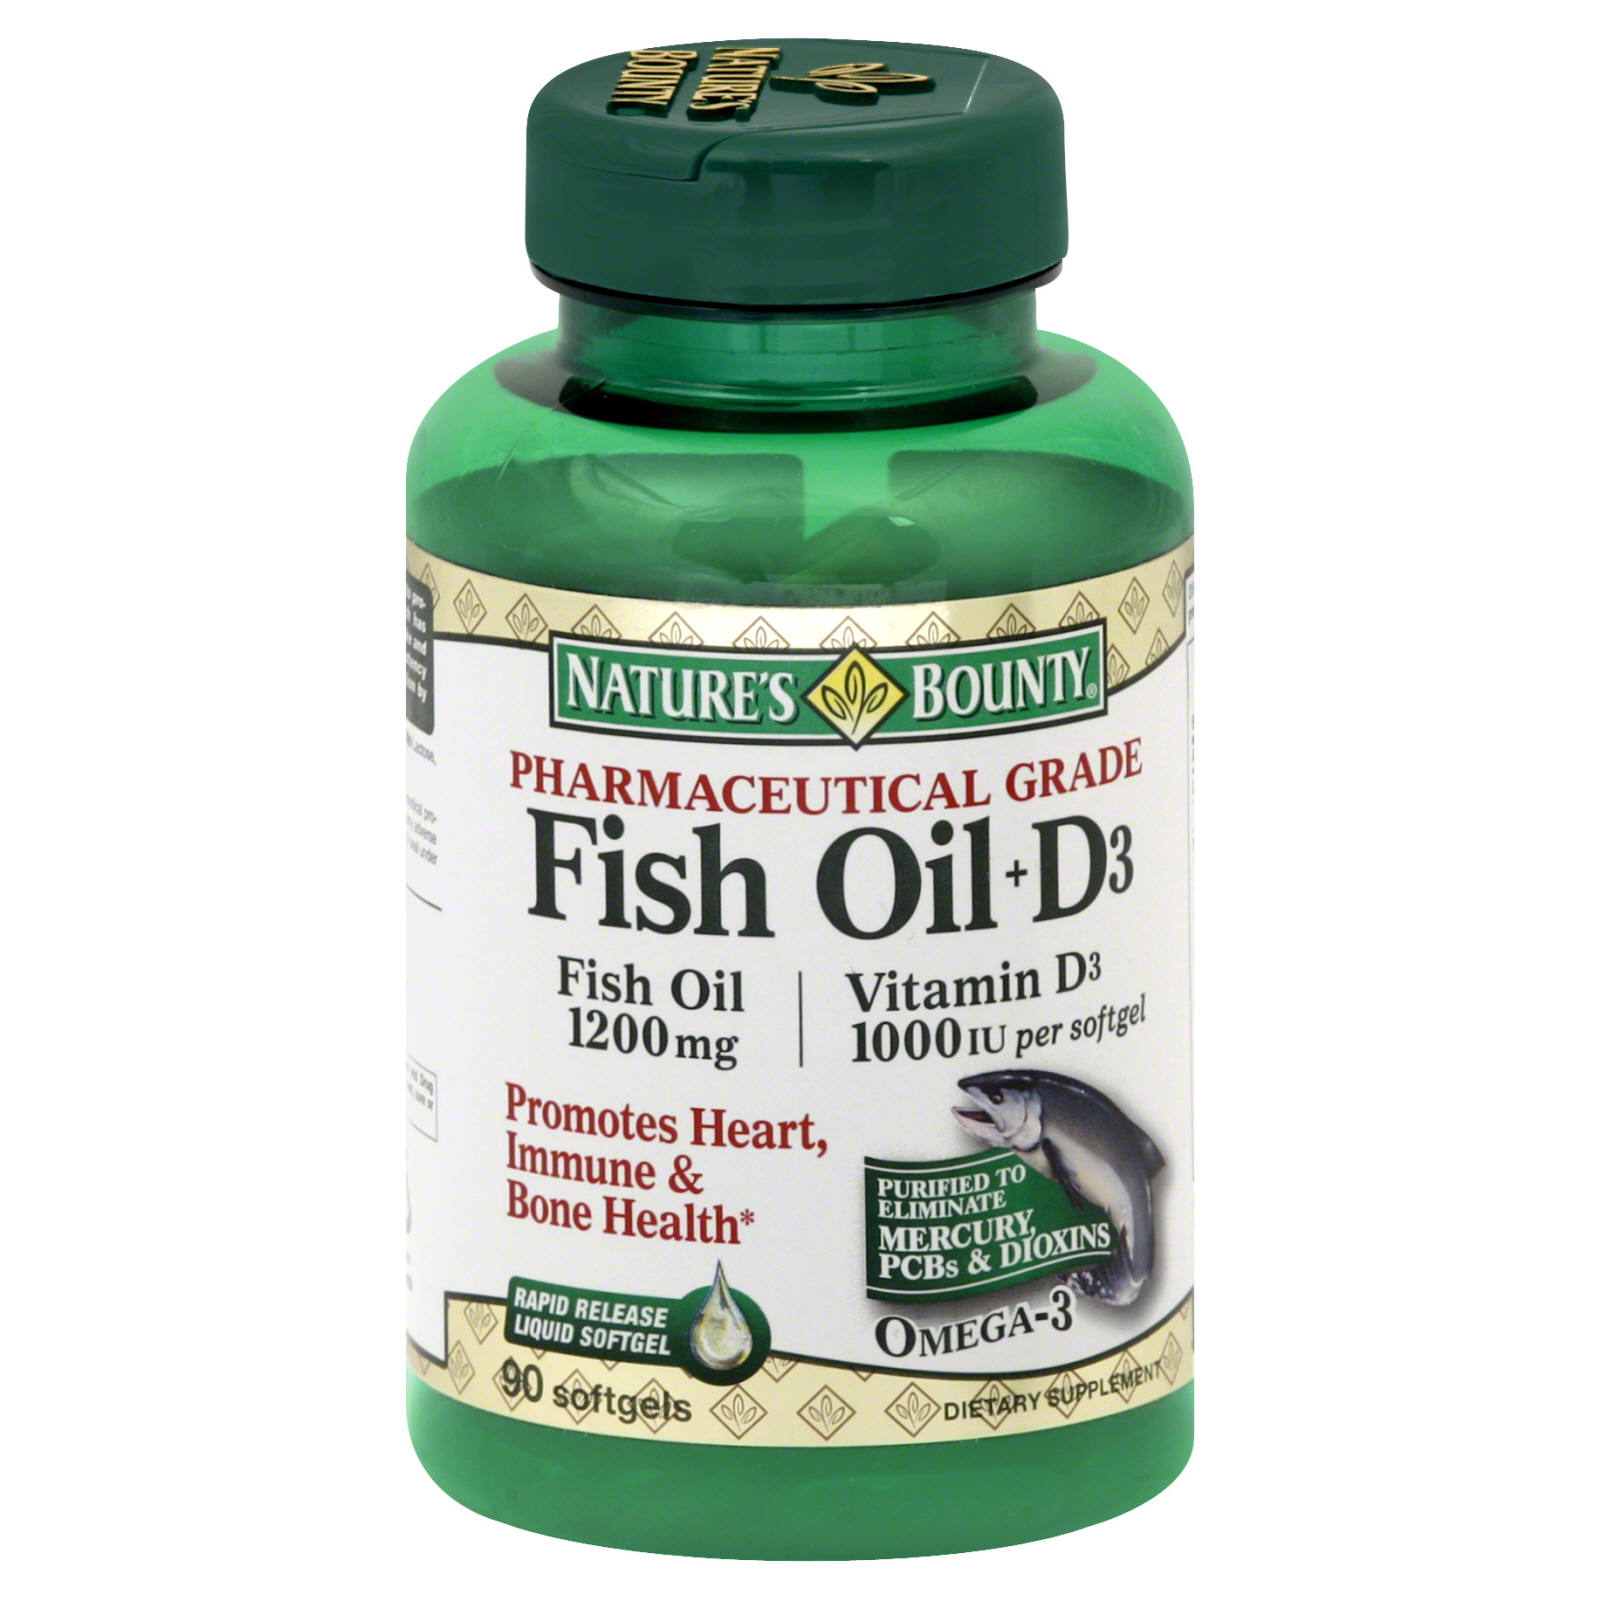 Nature's Bounty Fish Oil + D3, Softgels, 90 softgels